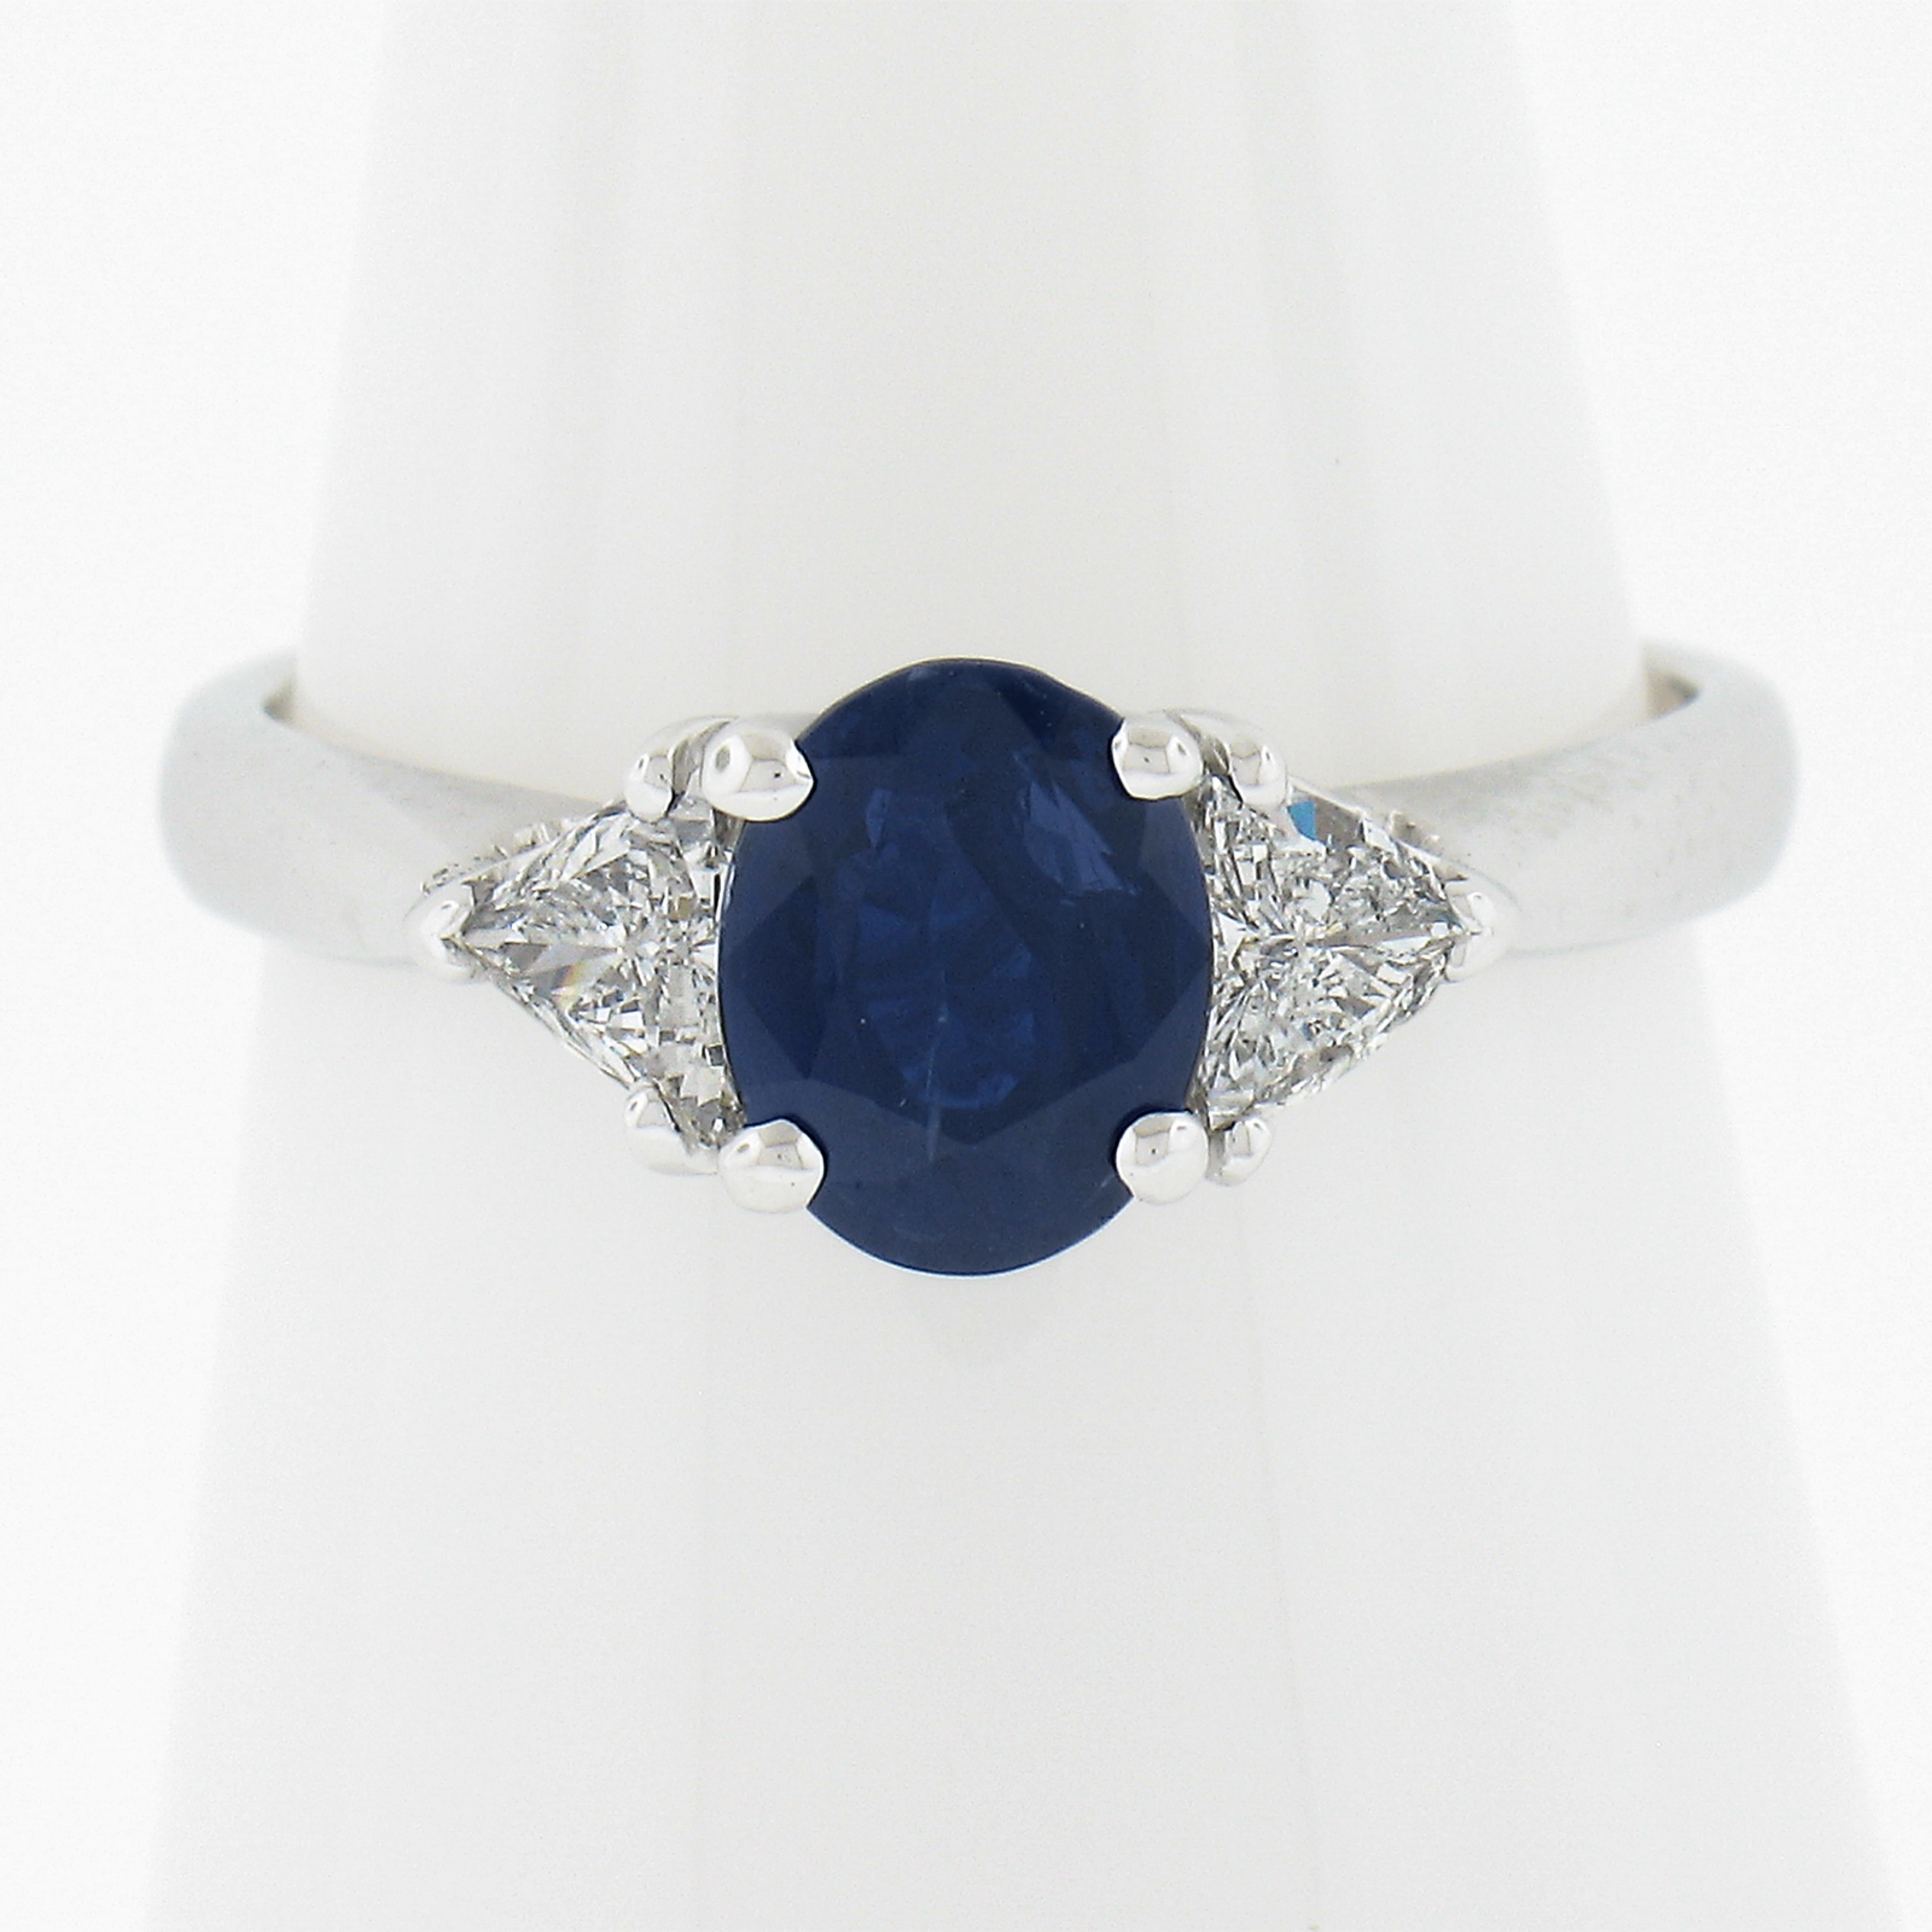 --Pierre(s) :...
(1) Saphir véritable naturel - taille ovale brillante - serti - couleur bleu royal - non chauffé - 1,17ct (exact - certifié)
**Voir les détails de la certification ci-dessous** 
(2) Diamants véritables naturels - taille trillion -